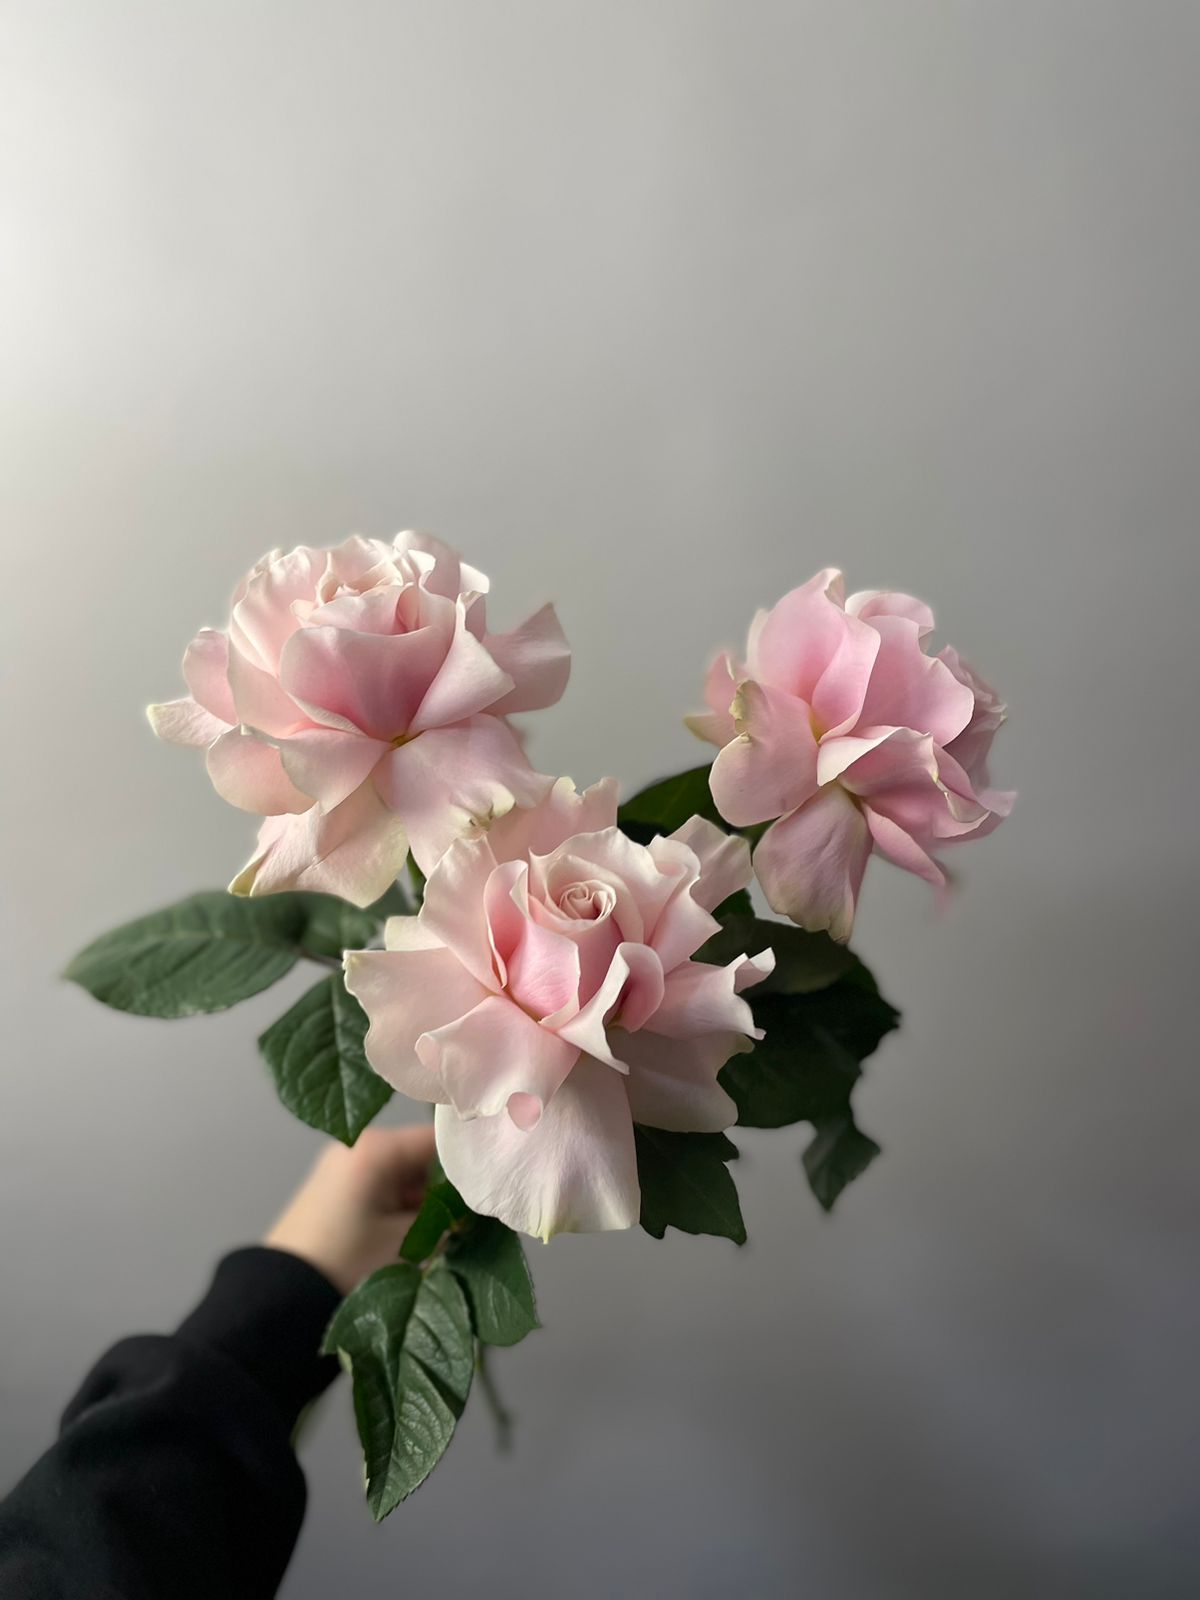 Вывернутые розы «Пинк Мондиаль» | Цветы в Иваново | ул. Палехская д. 4